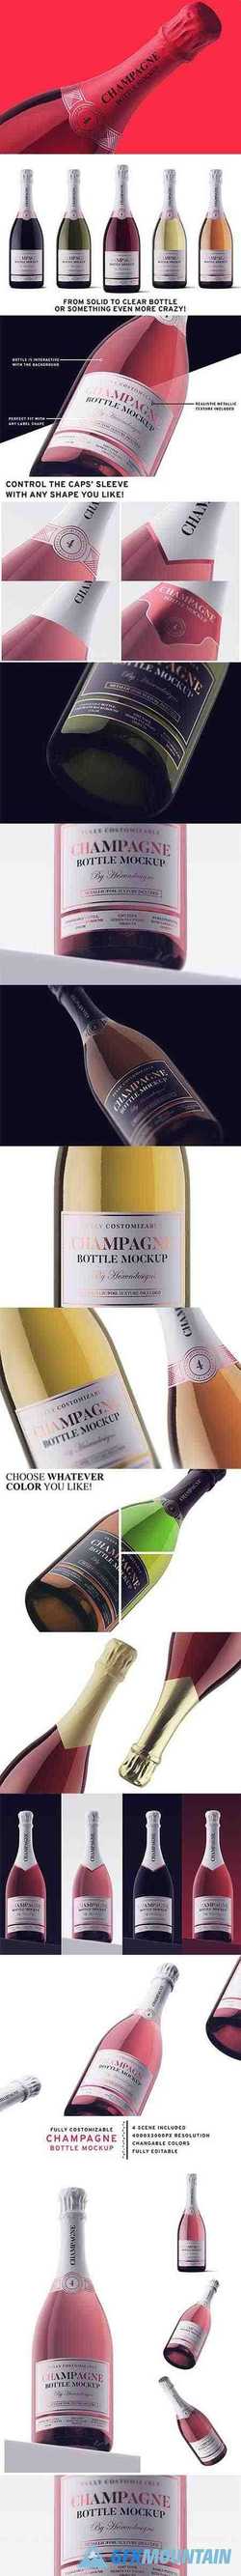 Champagne Bottle Mockup 3715822